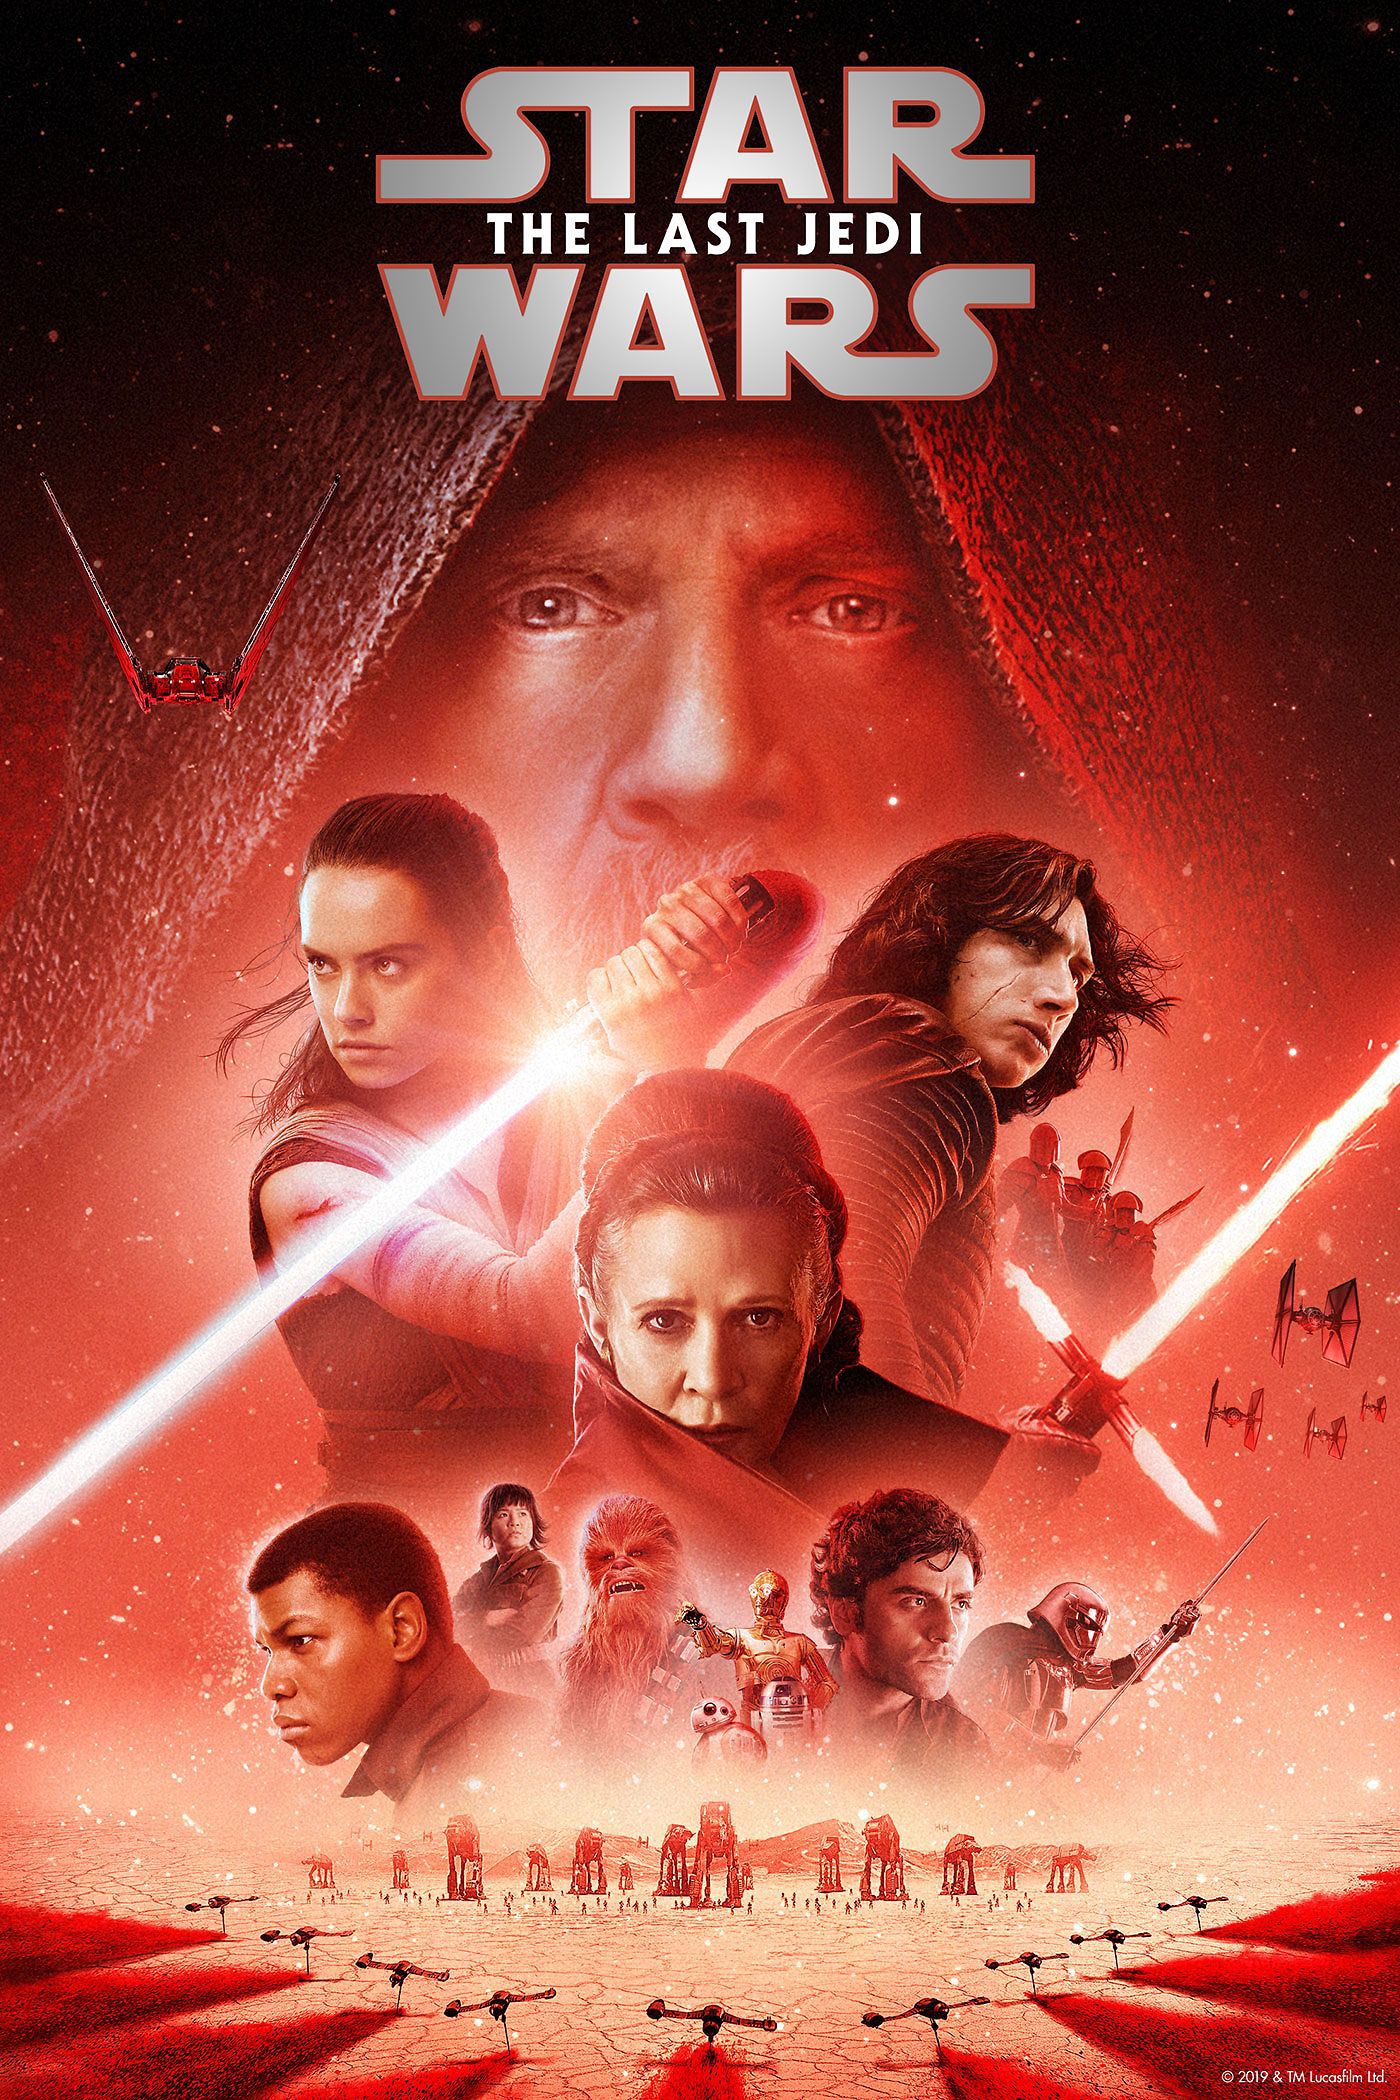 Star Wars: The Last Jedi HD Digital Movie Code